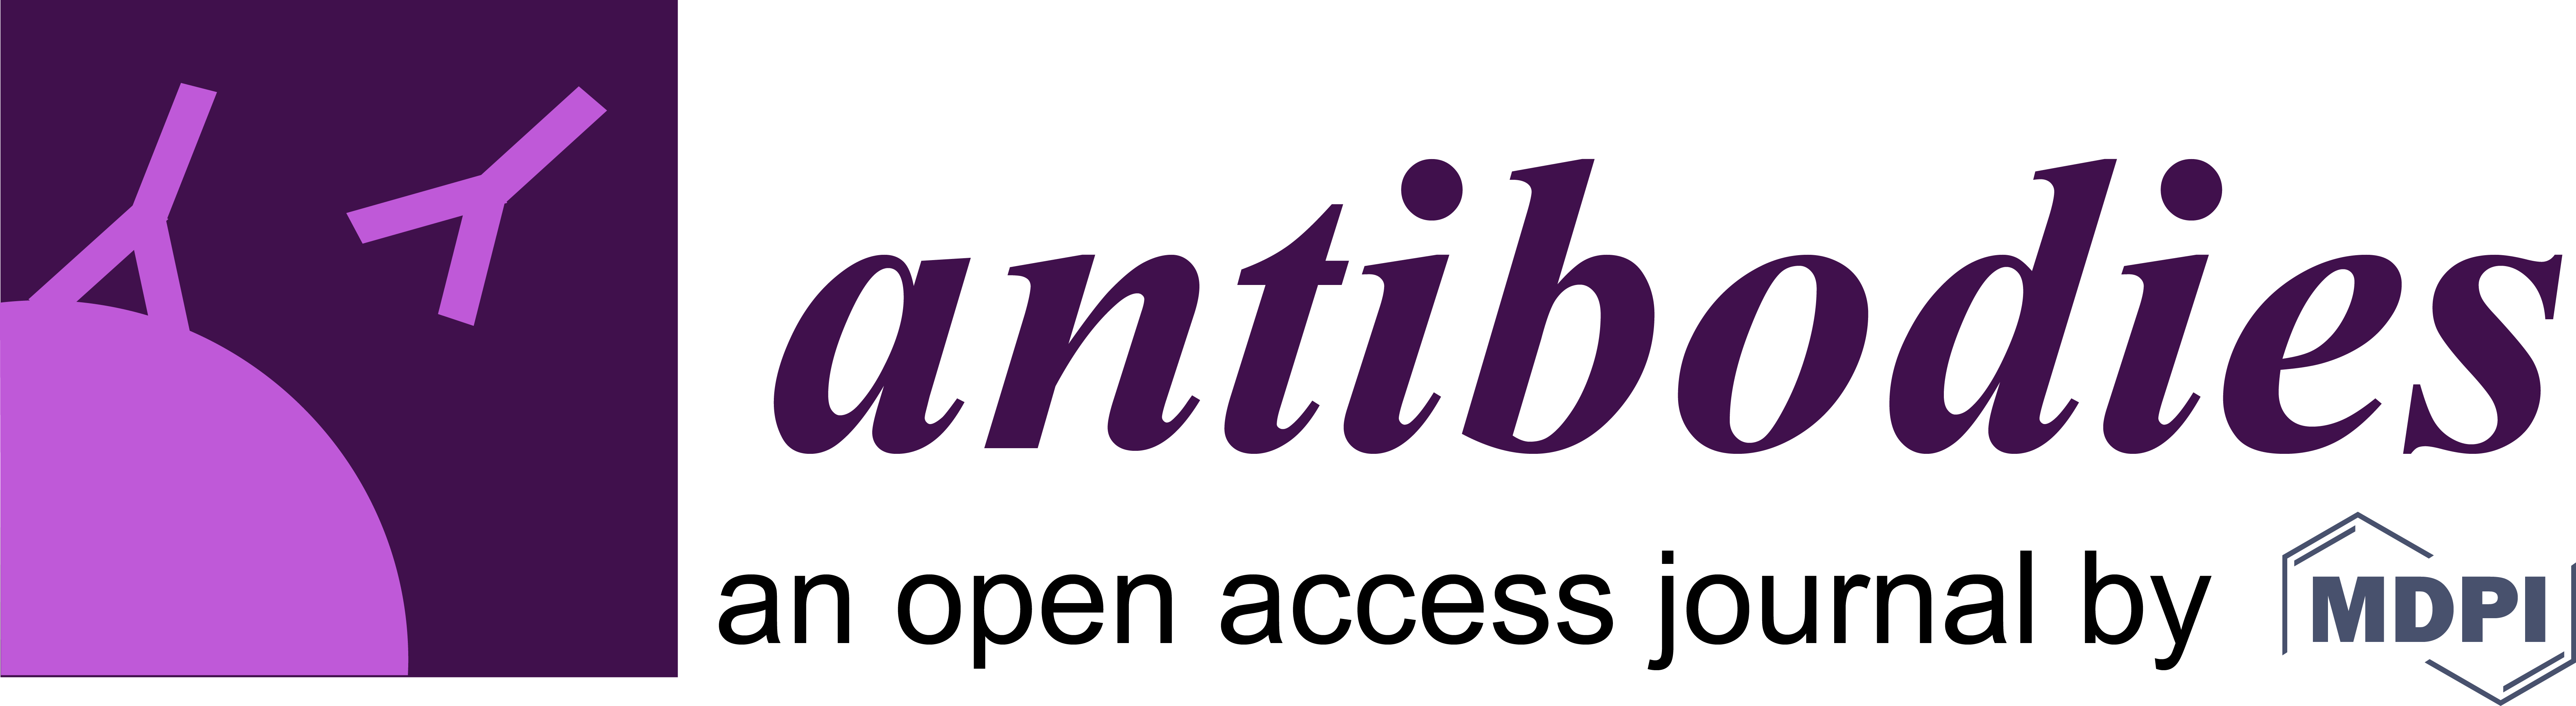 2018-04/8-antibodies-journal.png